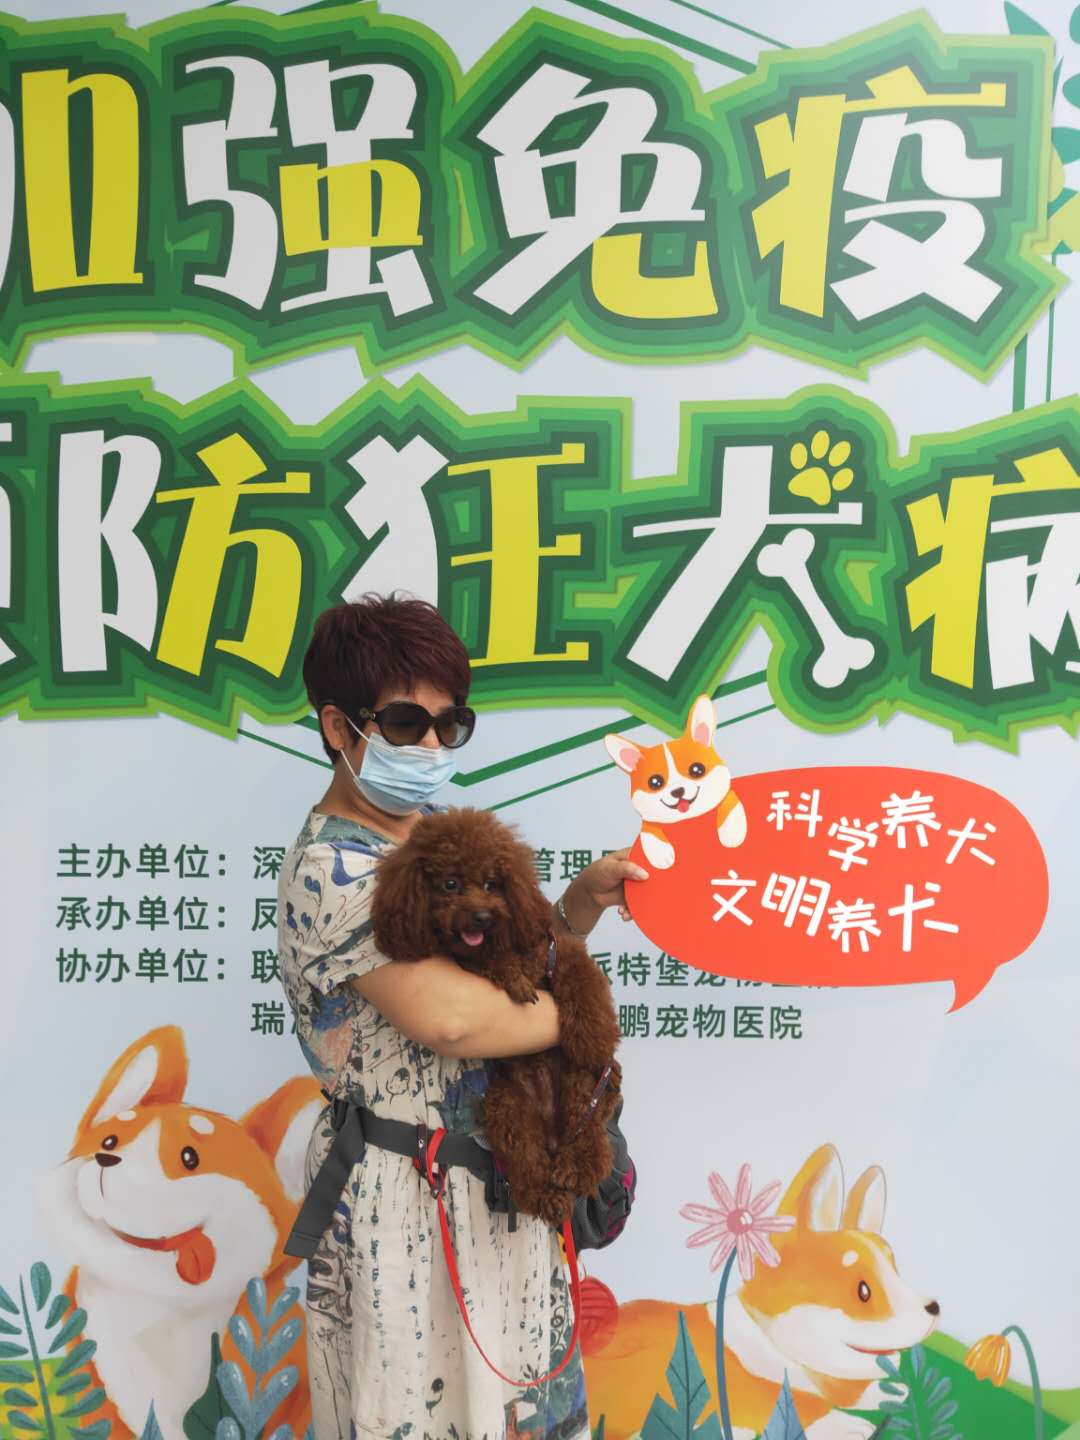 深圳罗湖举办犬类狂犬病强制免疫宣传活动 降低狂犬病发生风险